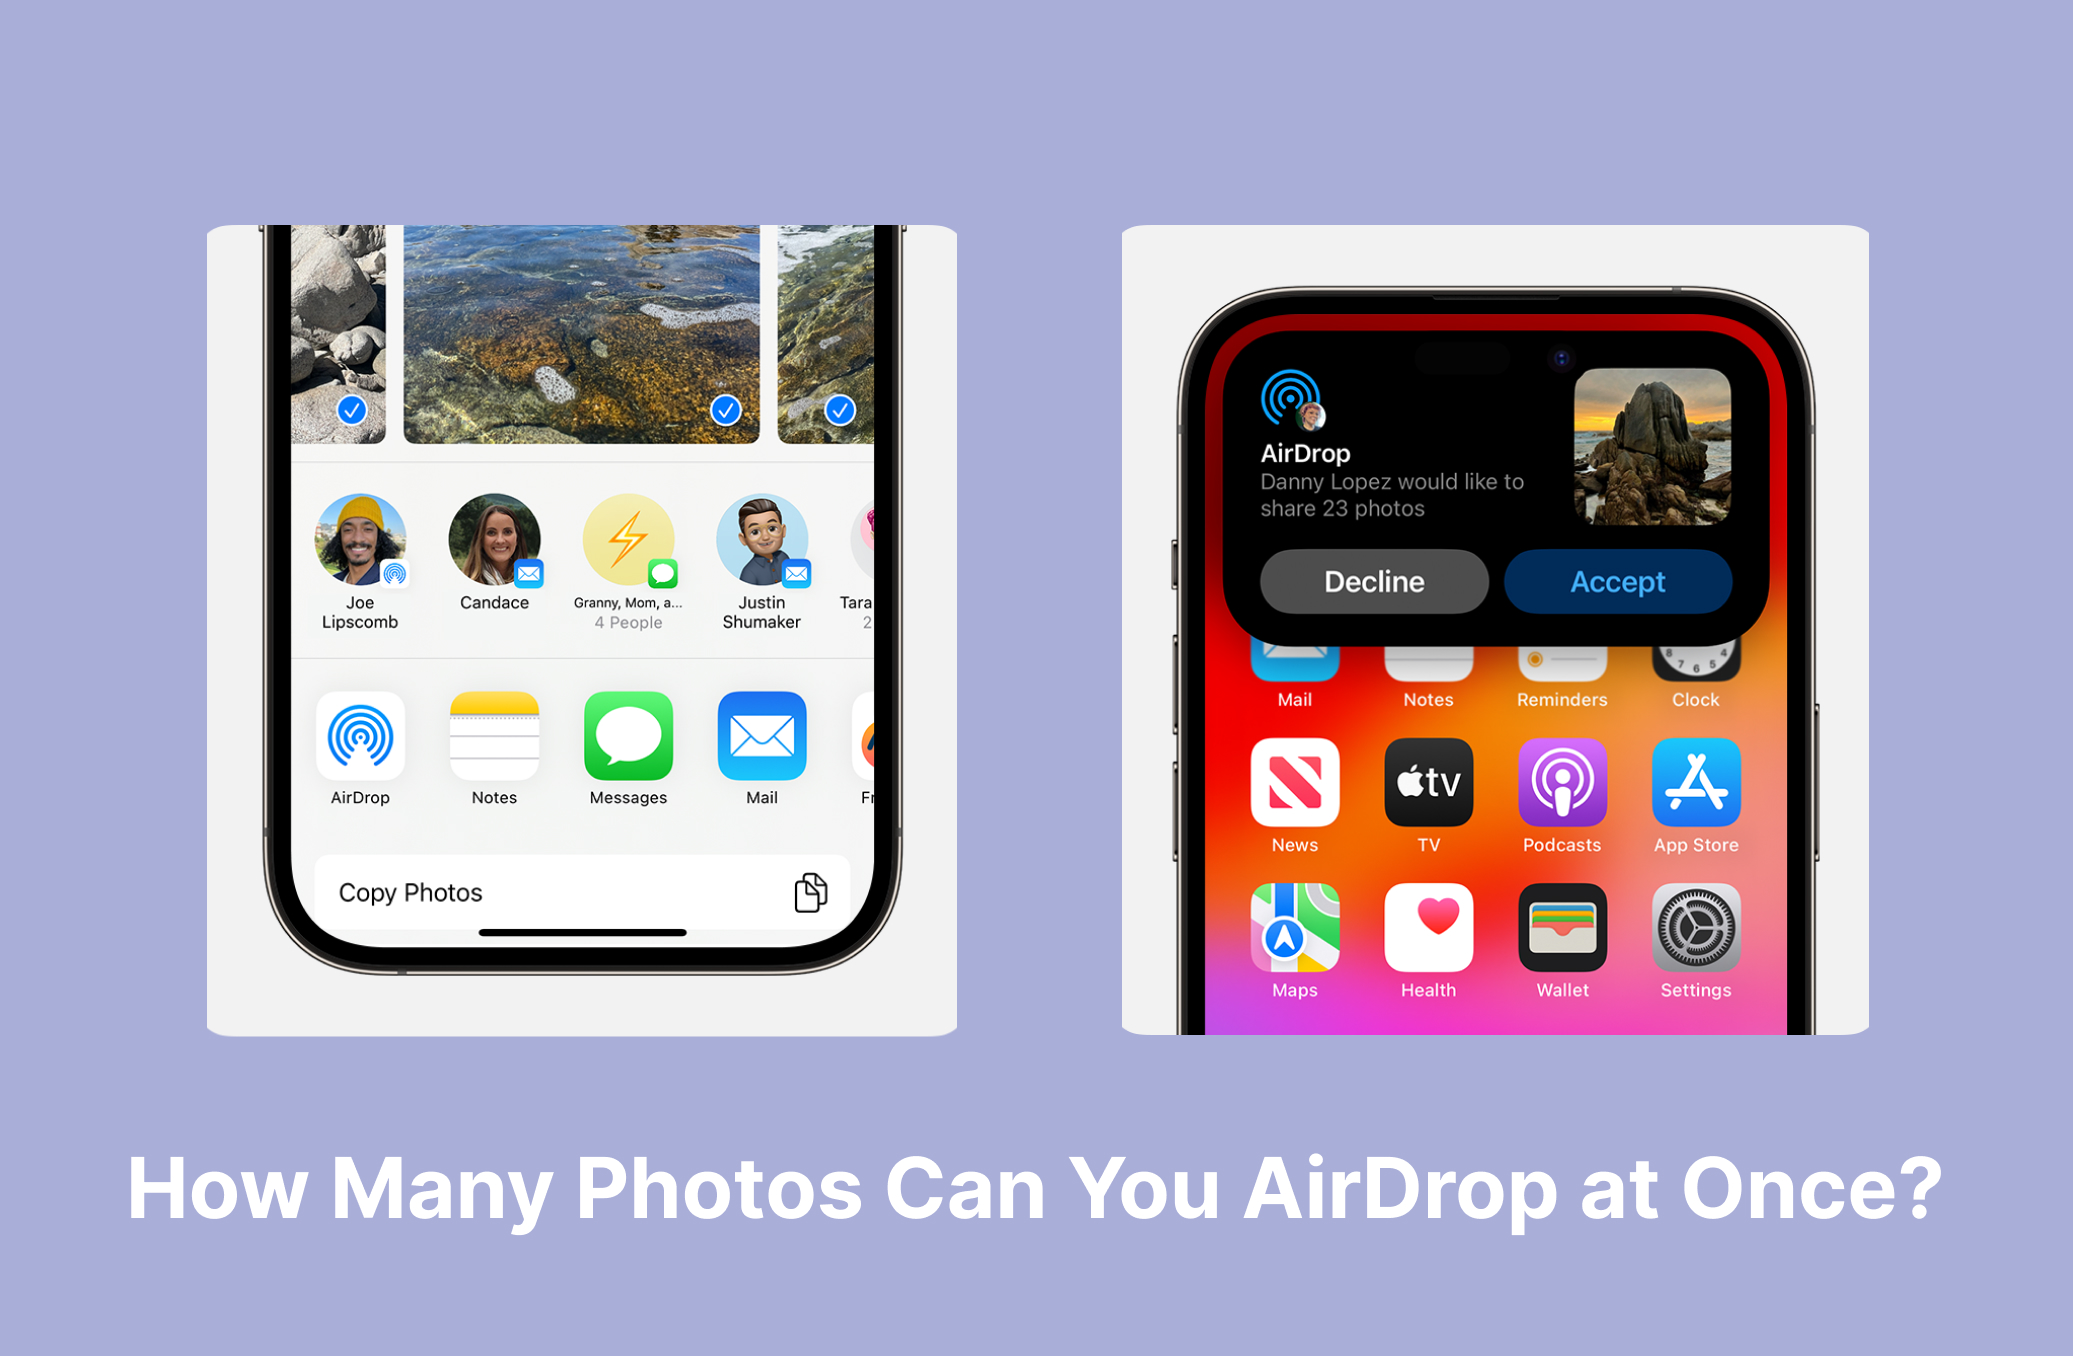 ¿Cuántas Fotos Puedes Enviar con AirDrop a la Vez?